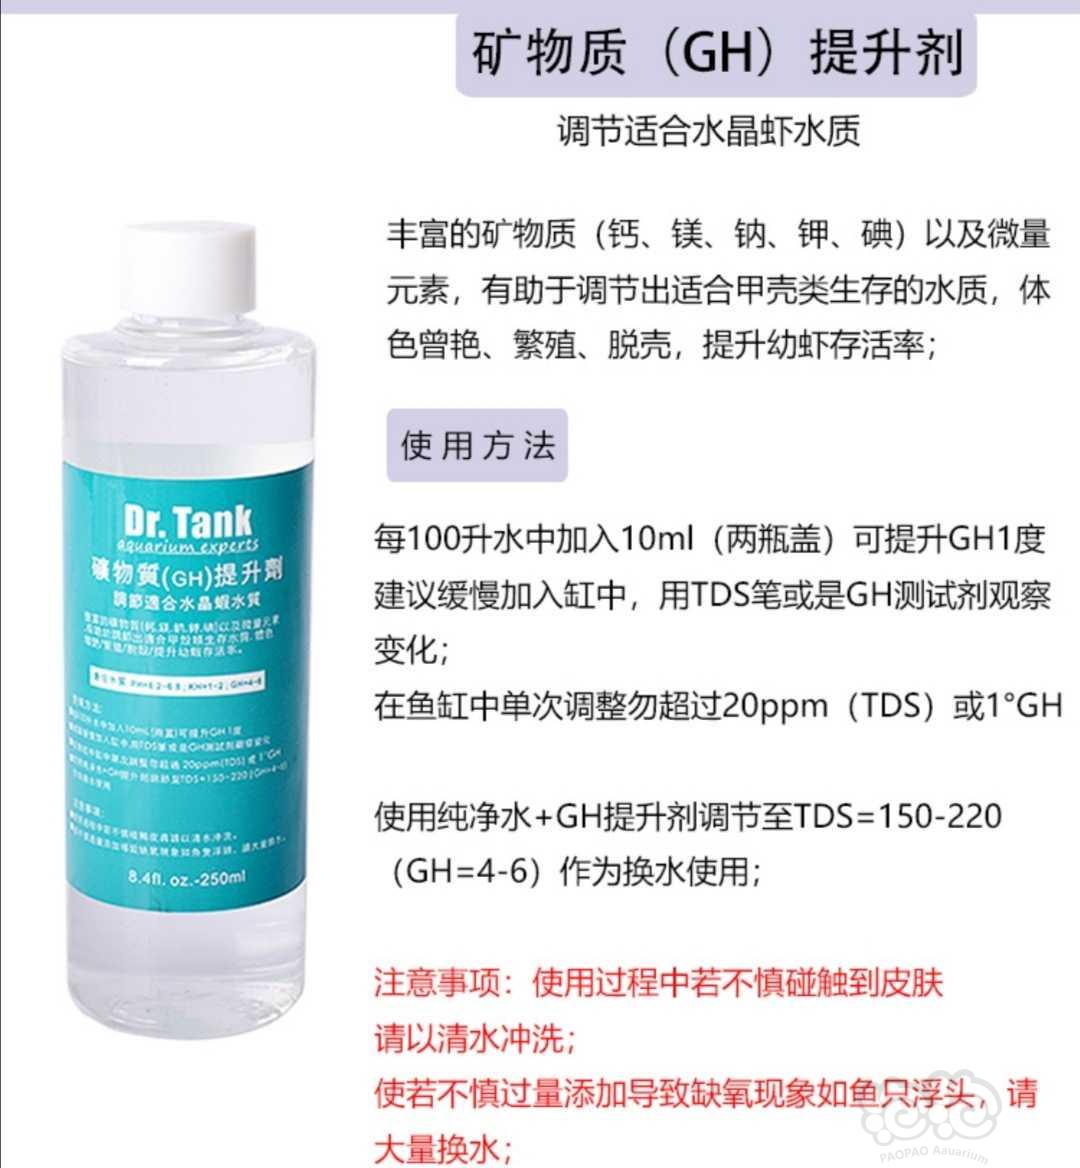 【用品】2020-12-31#RMB拍卖坦克gh提升液四瓶（水晶虾用）-图1